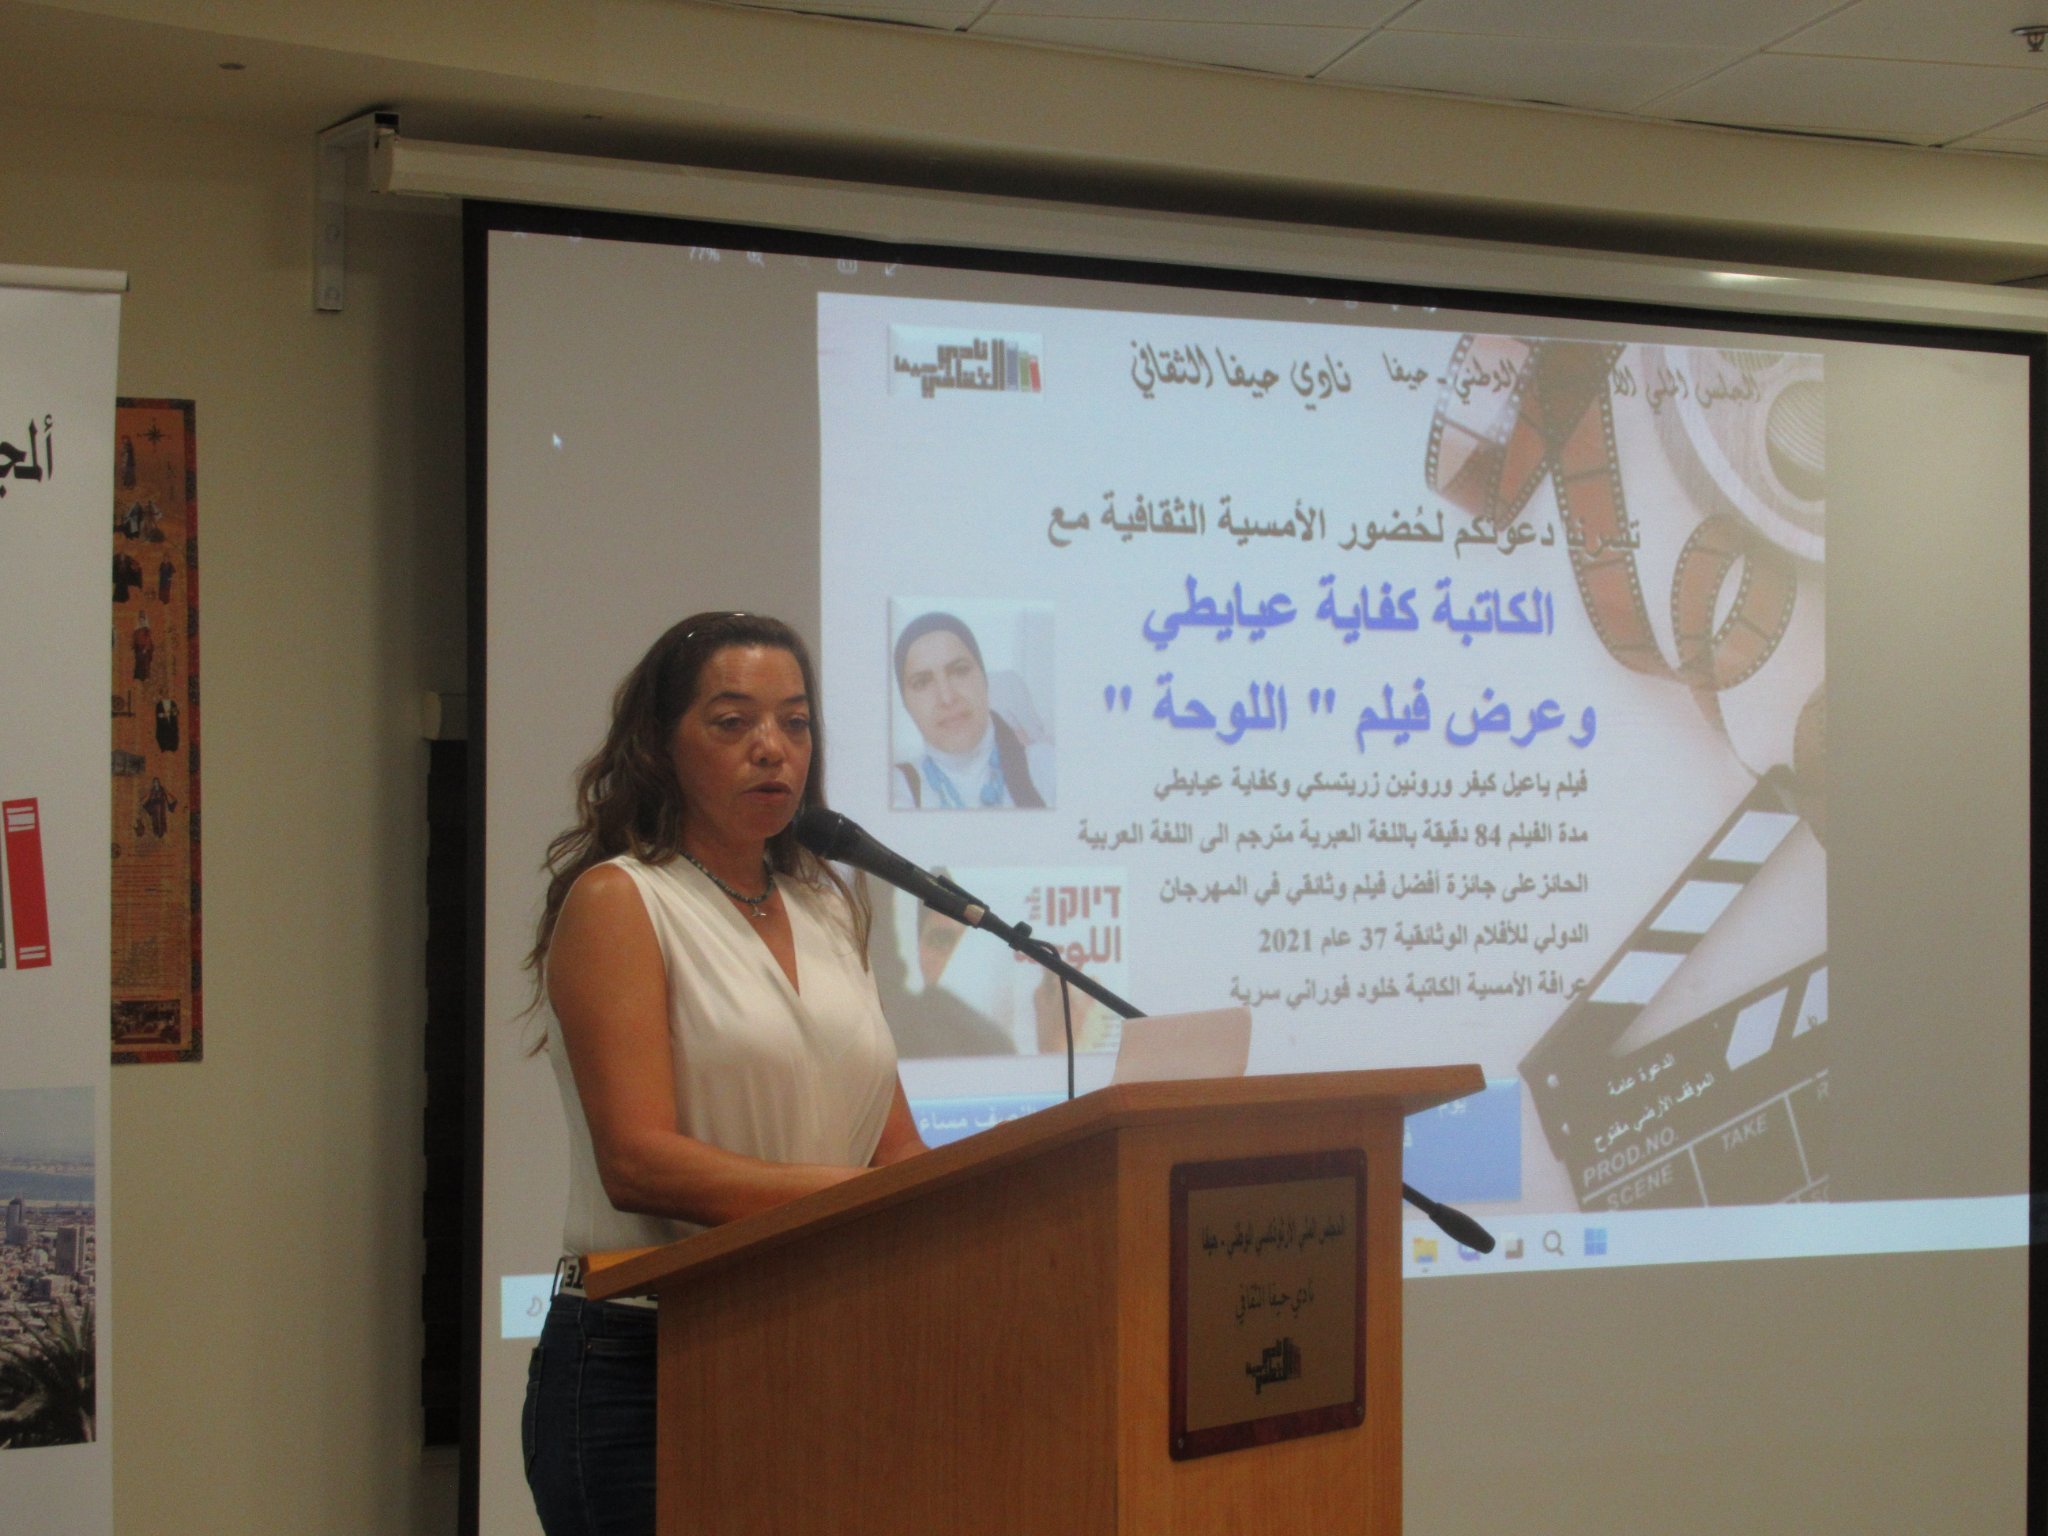 تكريم الفنانة كفاية عيايطي وعرض فيلمها الوثائقي "اللوحة" في نادي حيفا الثقافي-5